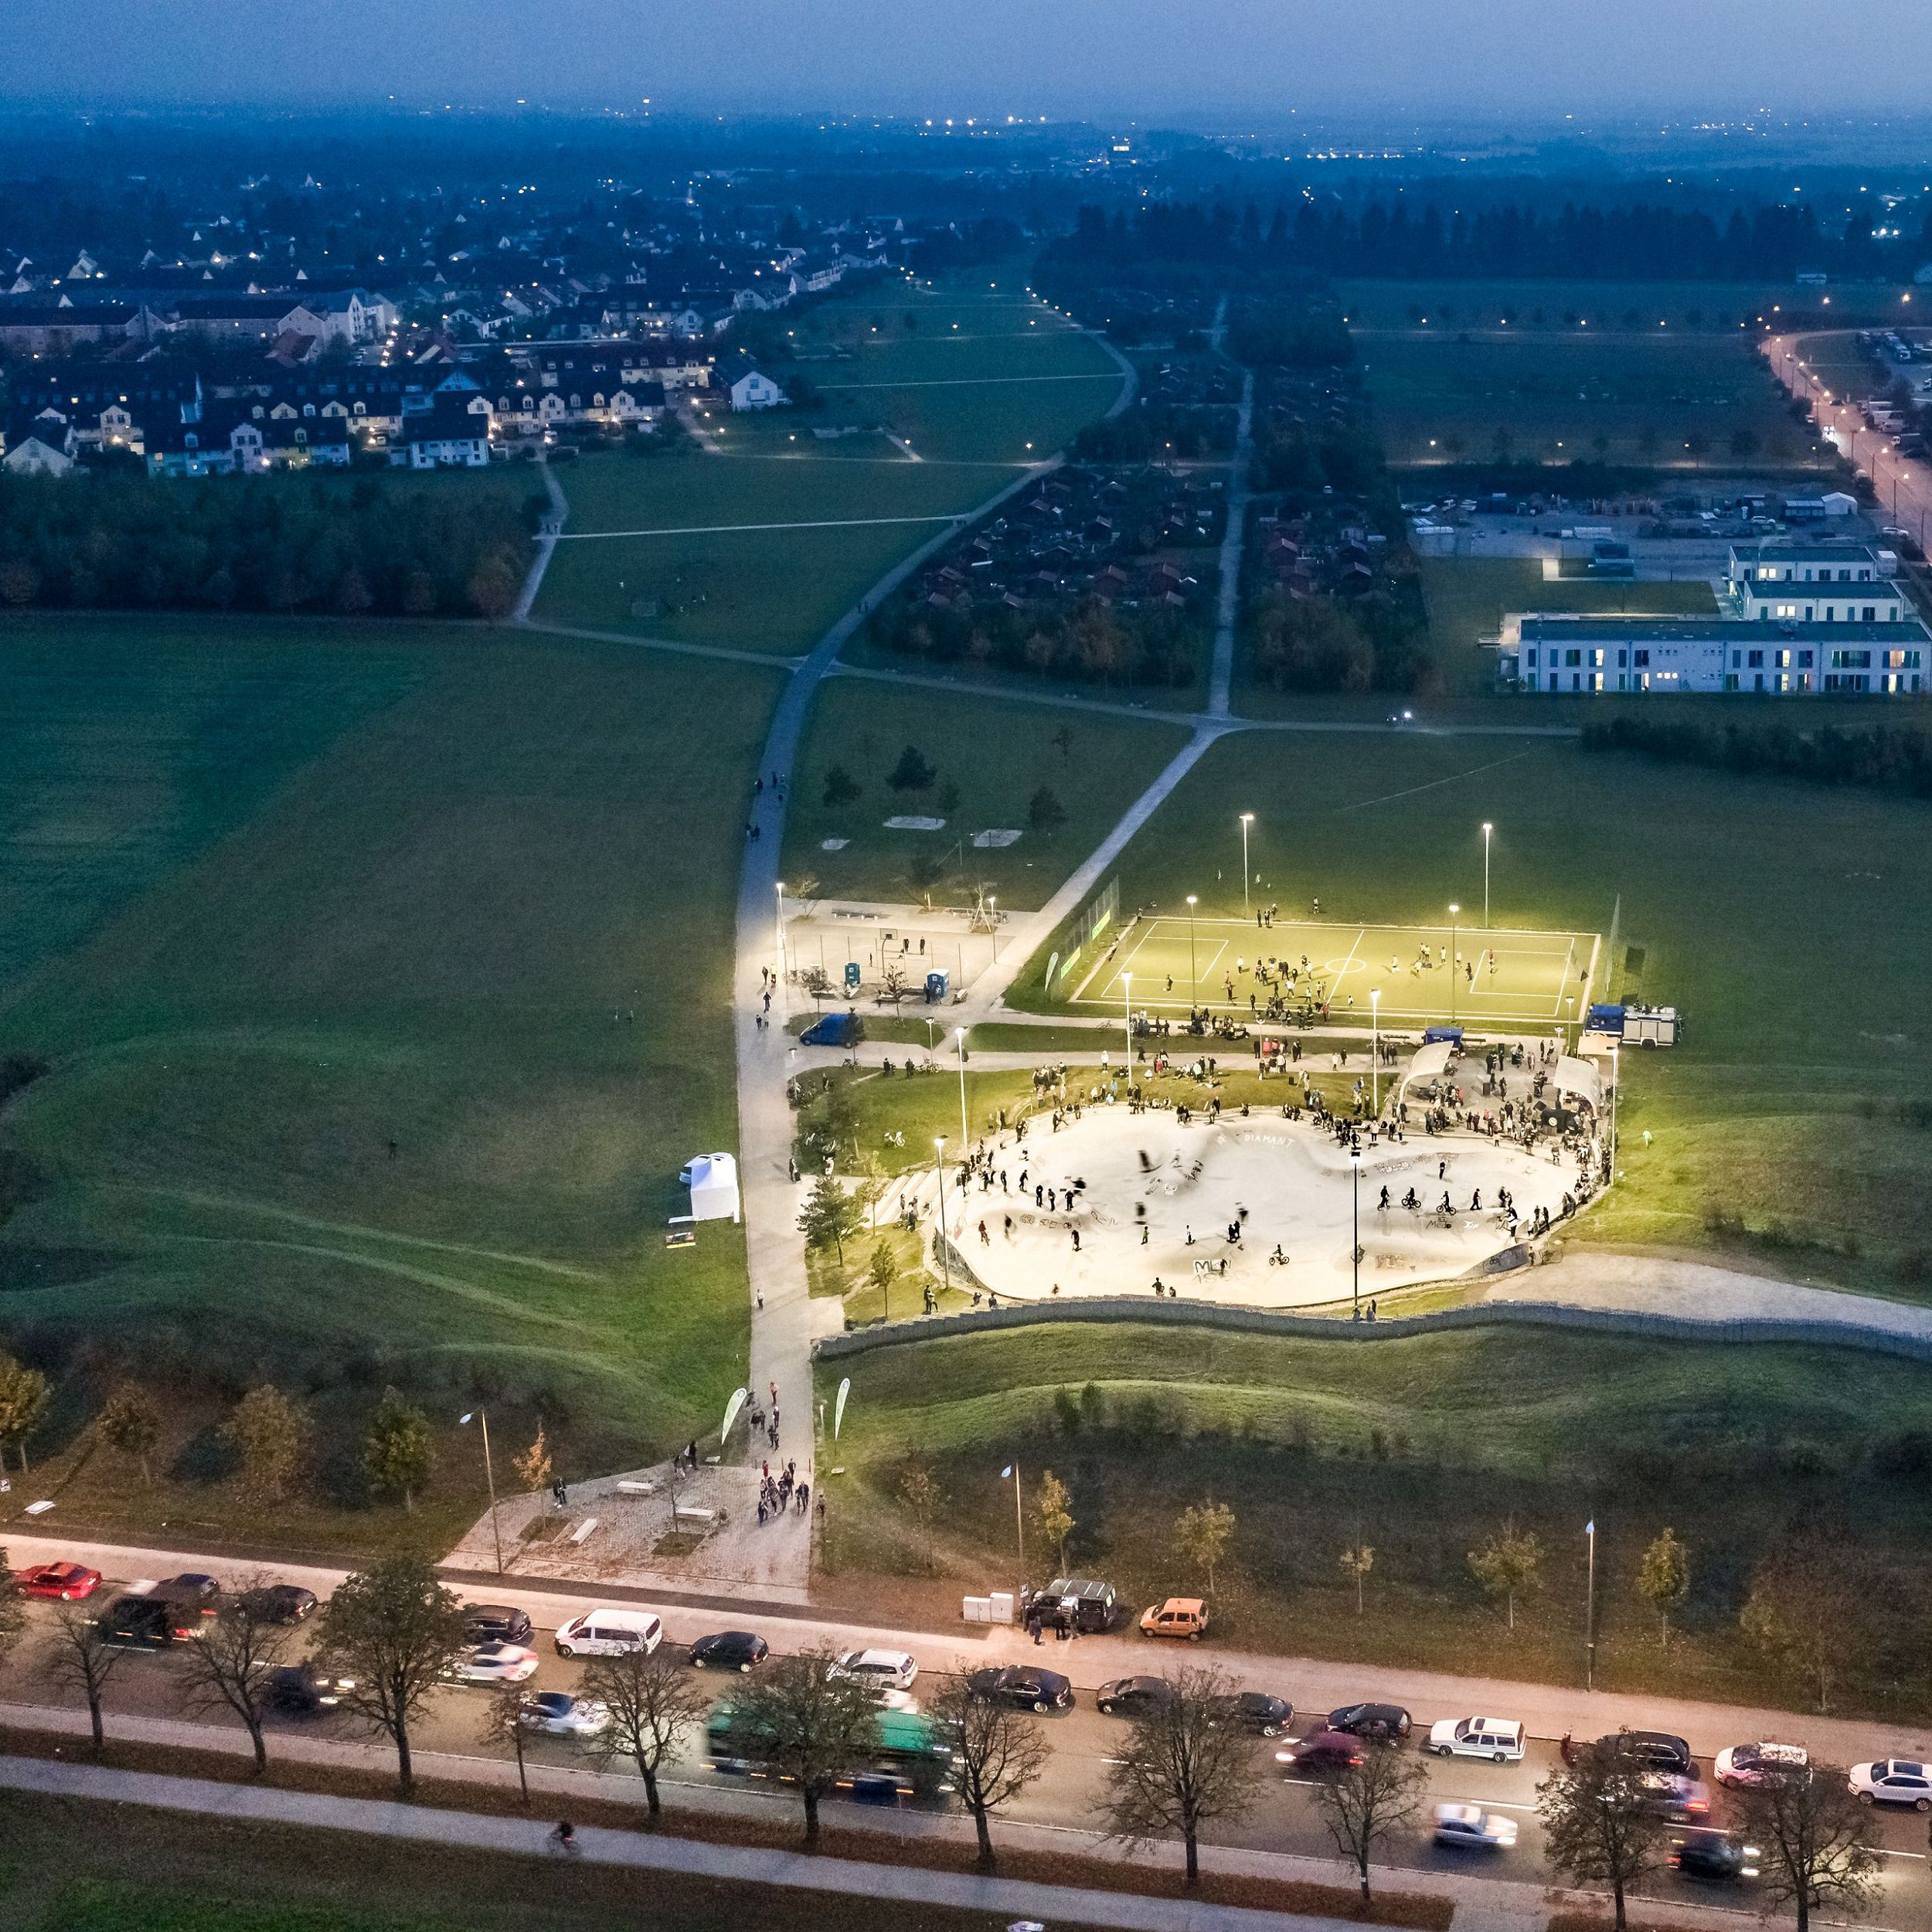 Bild: Eröffnung der neuen Beleuchung der Skateanlage mit Blick über den Grünzug, Foto: ver.de landschaftsarchitektur